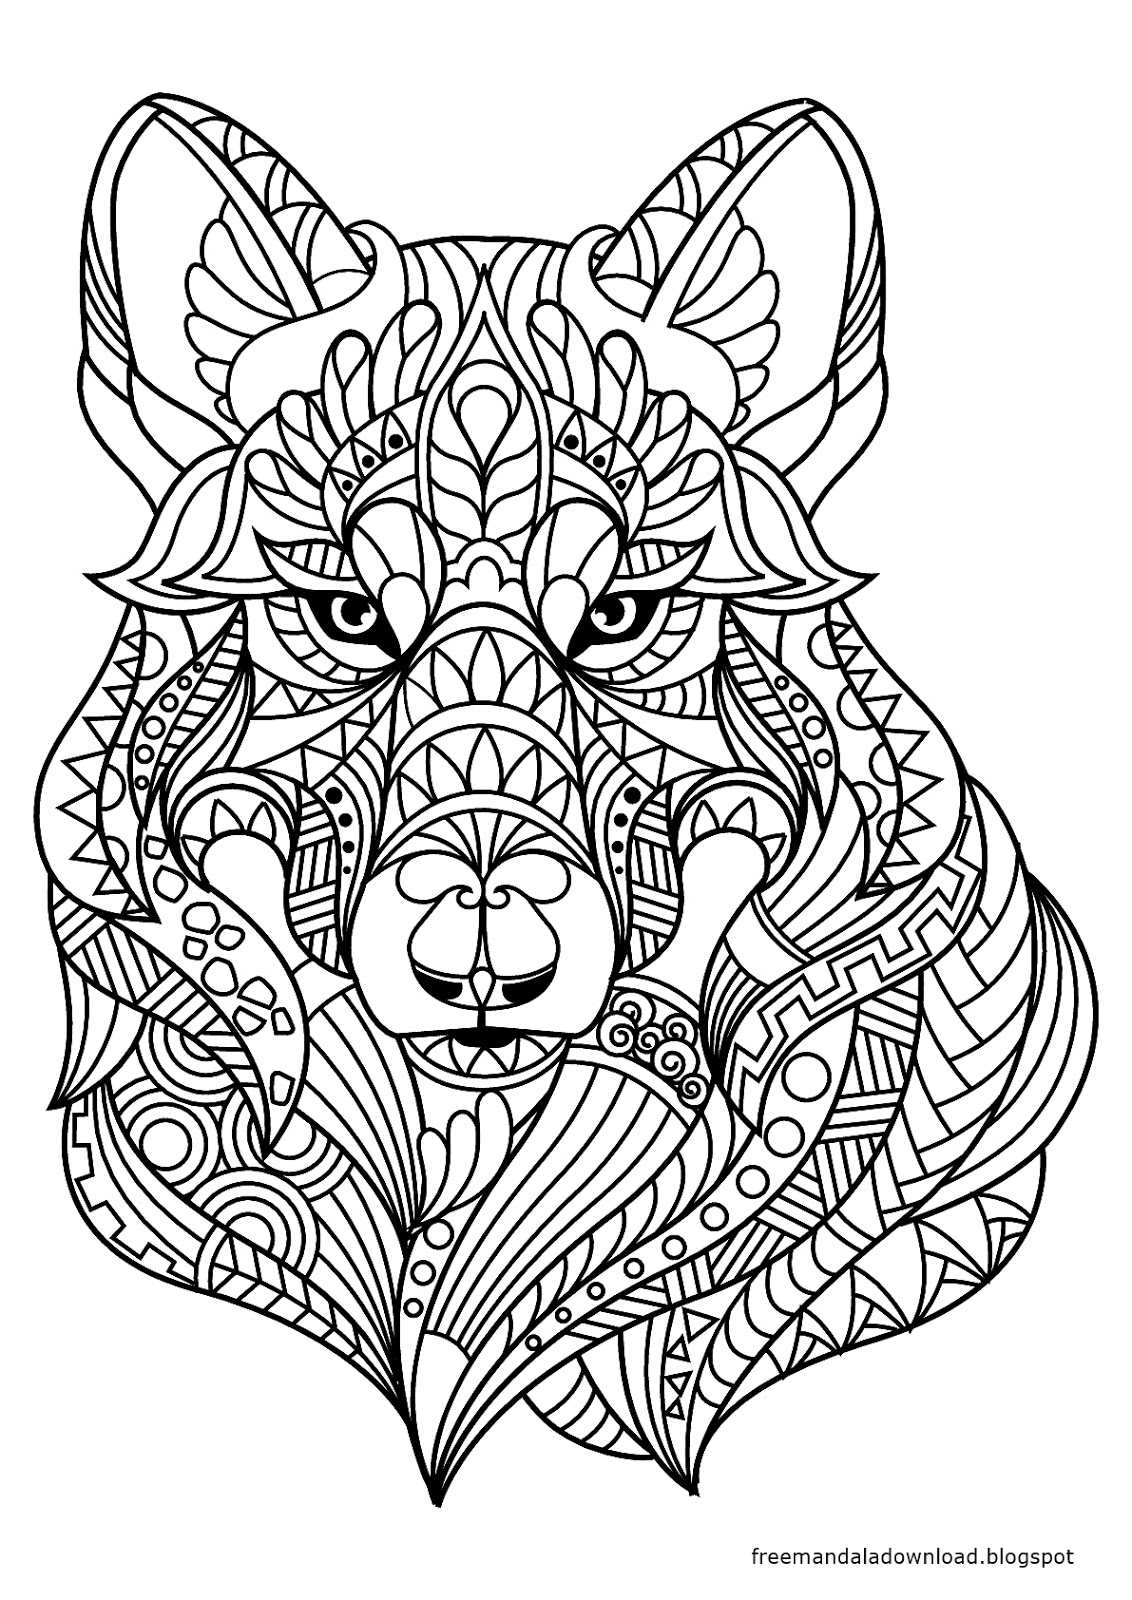 Malvorlagen - Wolf Mandala Zum Drucken - Free Mandala verwandt mit Ausmalbilder Erwachsene Drucken